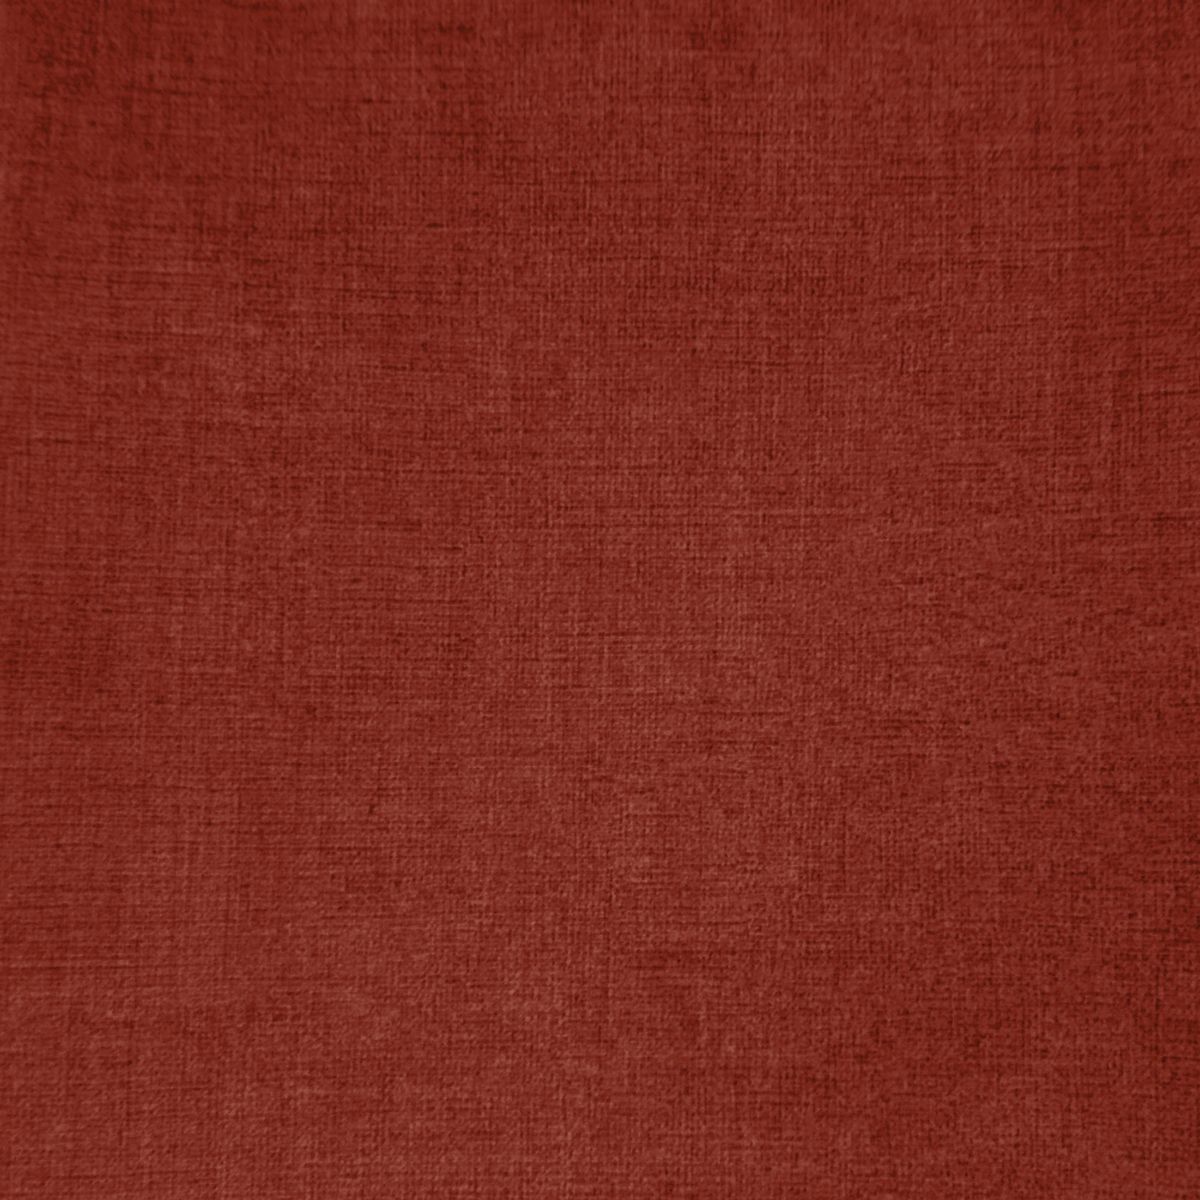 Fabian Copper Velvet Fabric by Voyage Maison